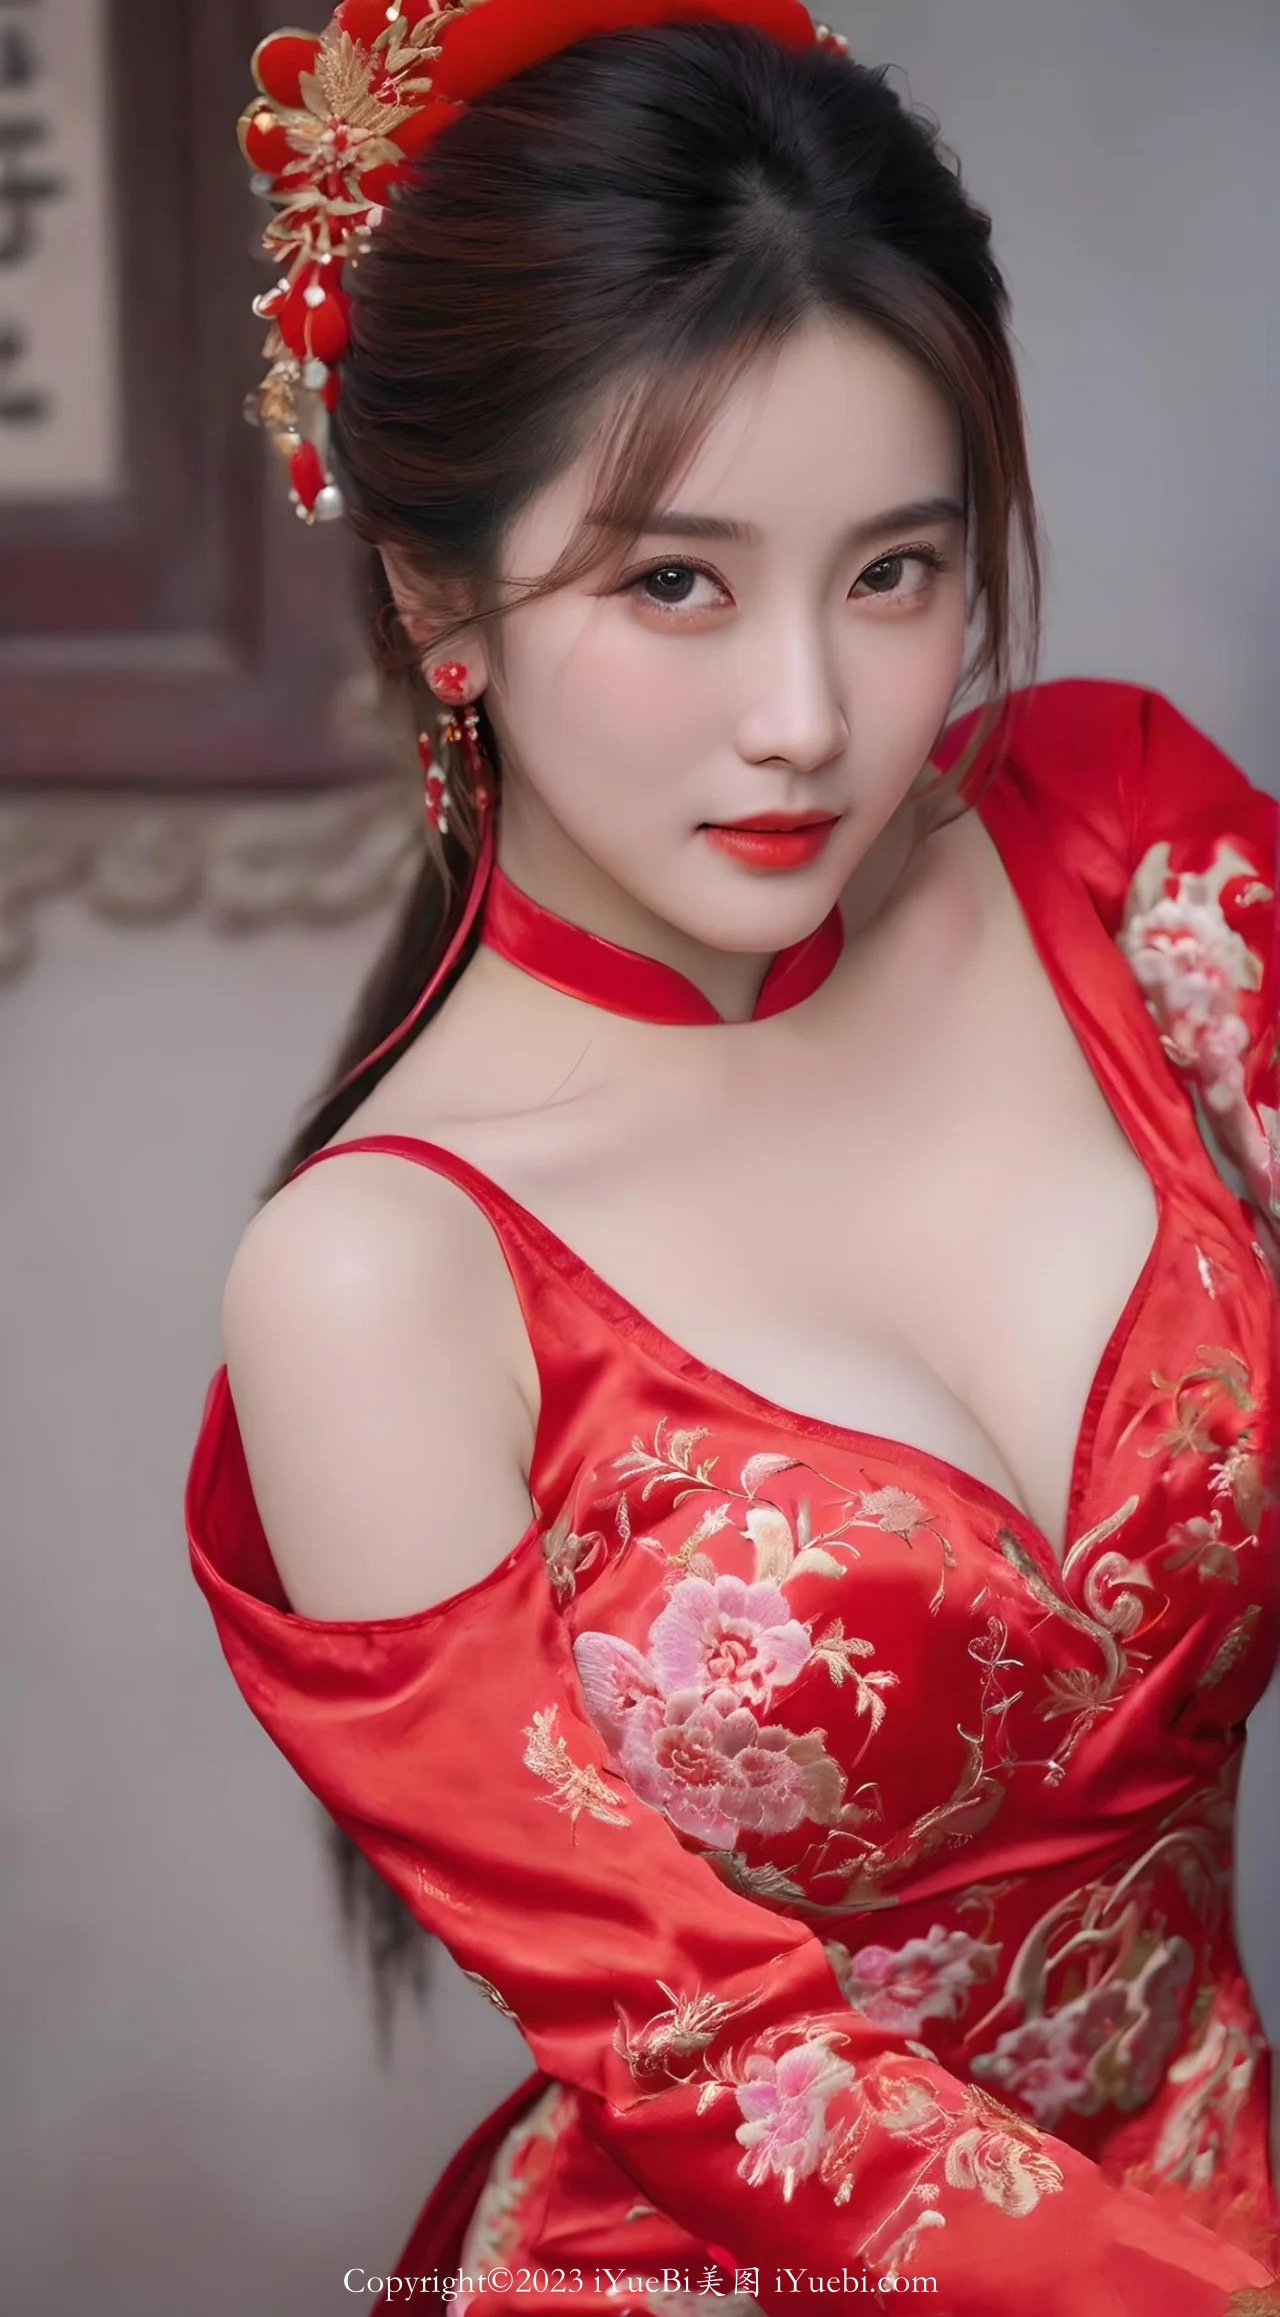 红色旗袍新娘妆的白嫩美胸模特儿